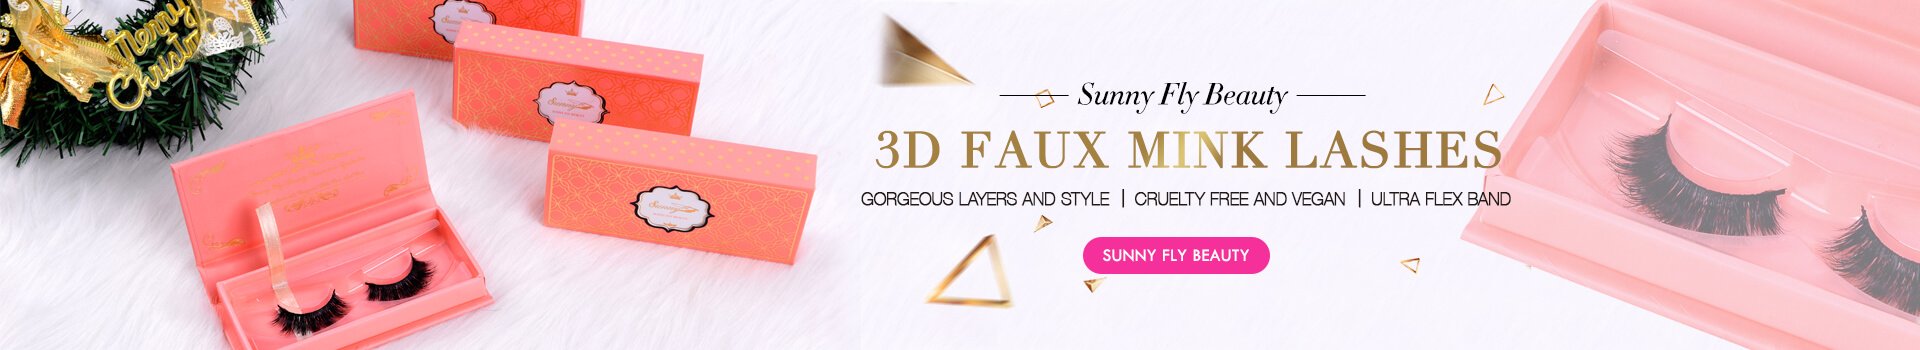 3D Faux Mink Lashes SD12